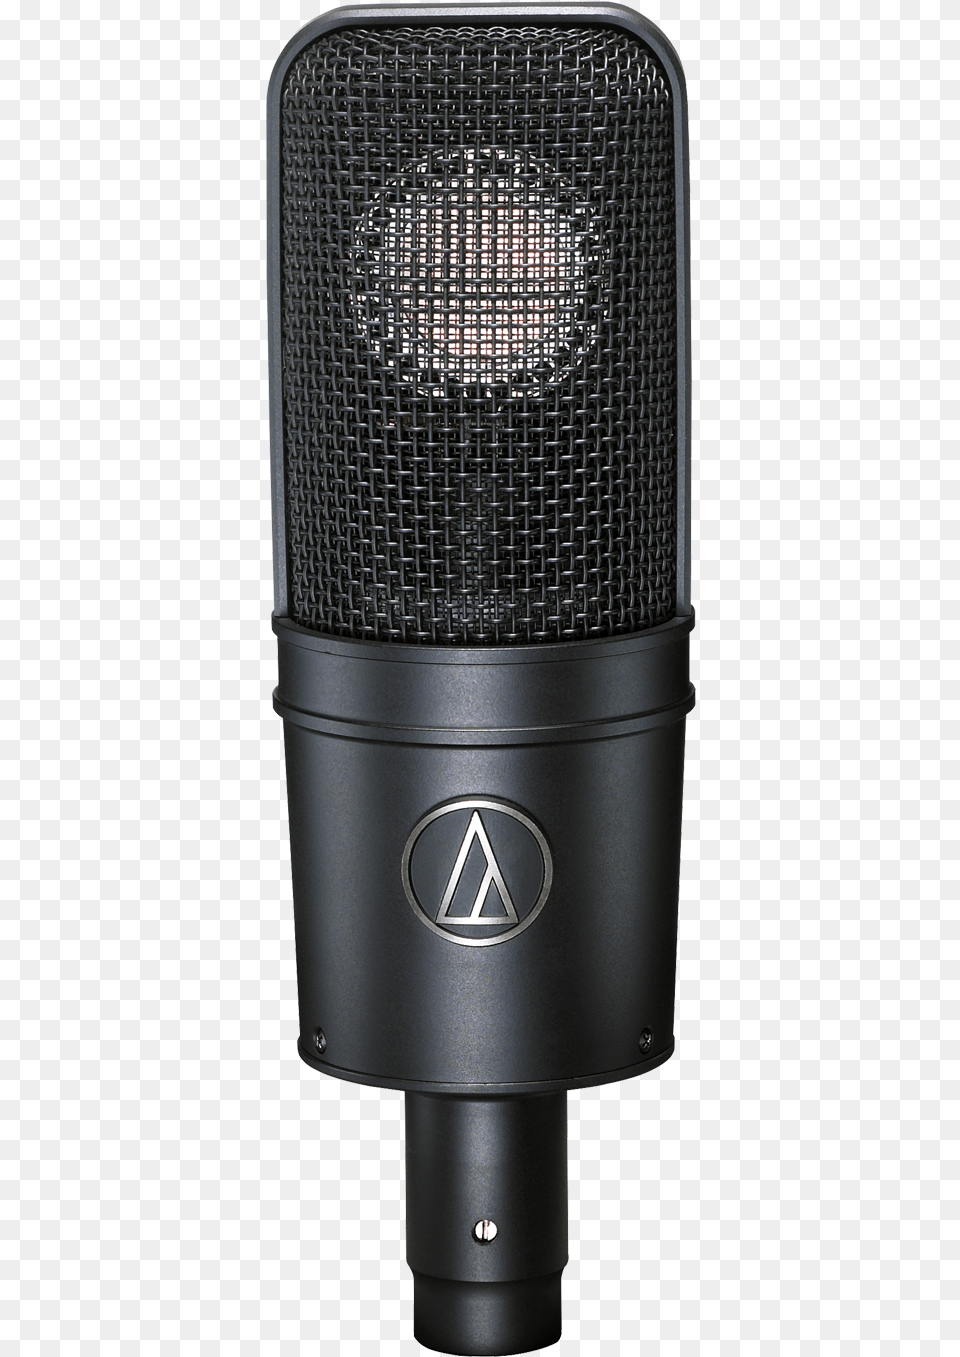 Micrfono Condensador De Estudio Audio Technica At4040 Audio Technica At4040 Condenser Microphone, Electrical Device Png Image